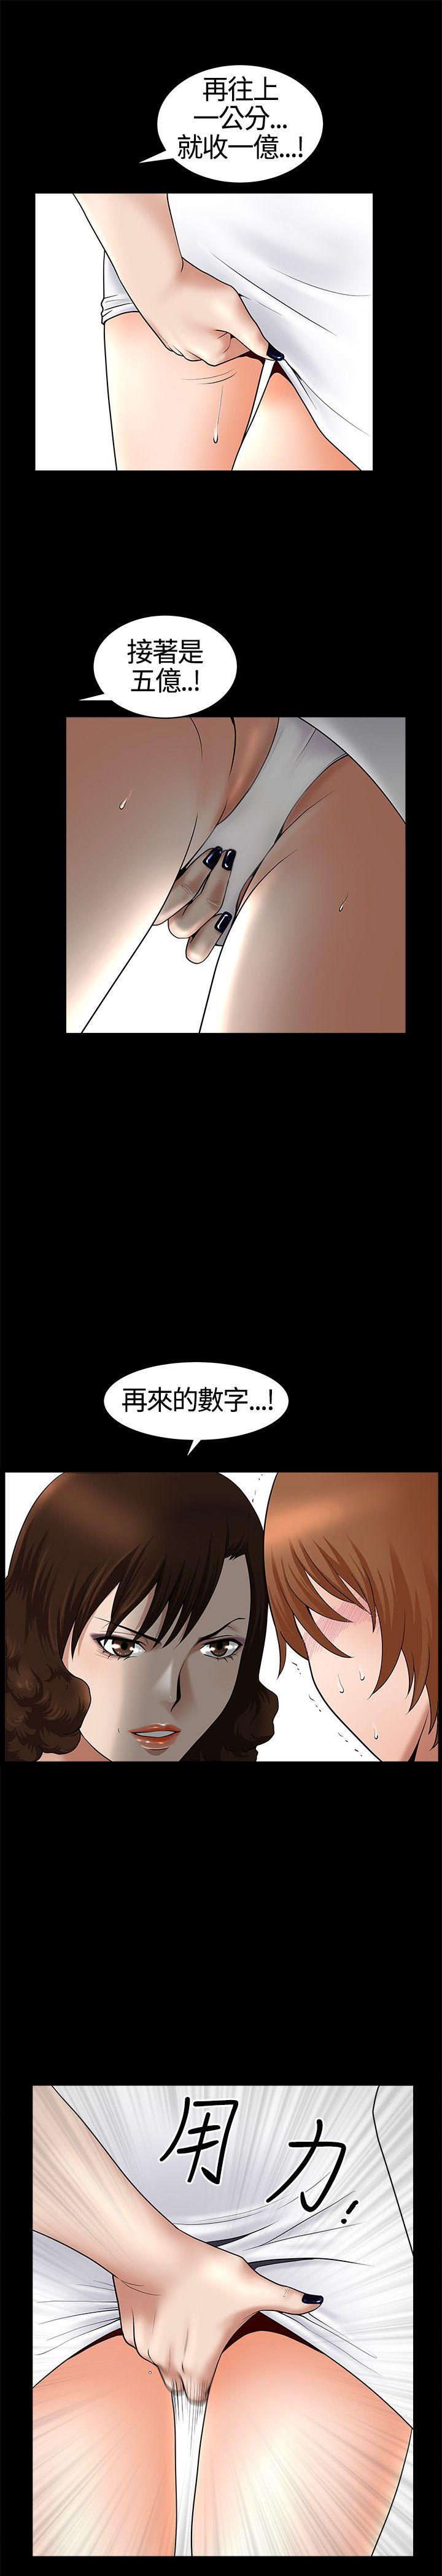 韩国污漫画 人妻性解放3:粗糙的手 第17话 21